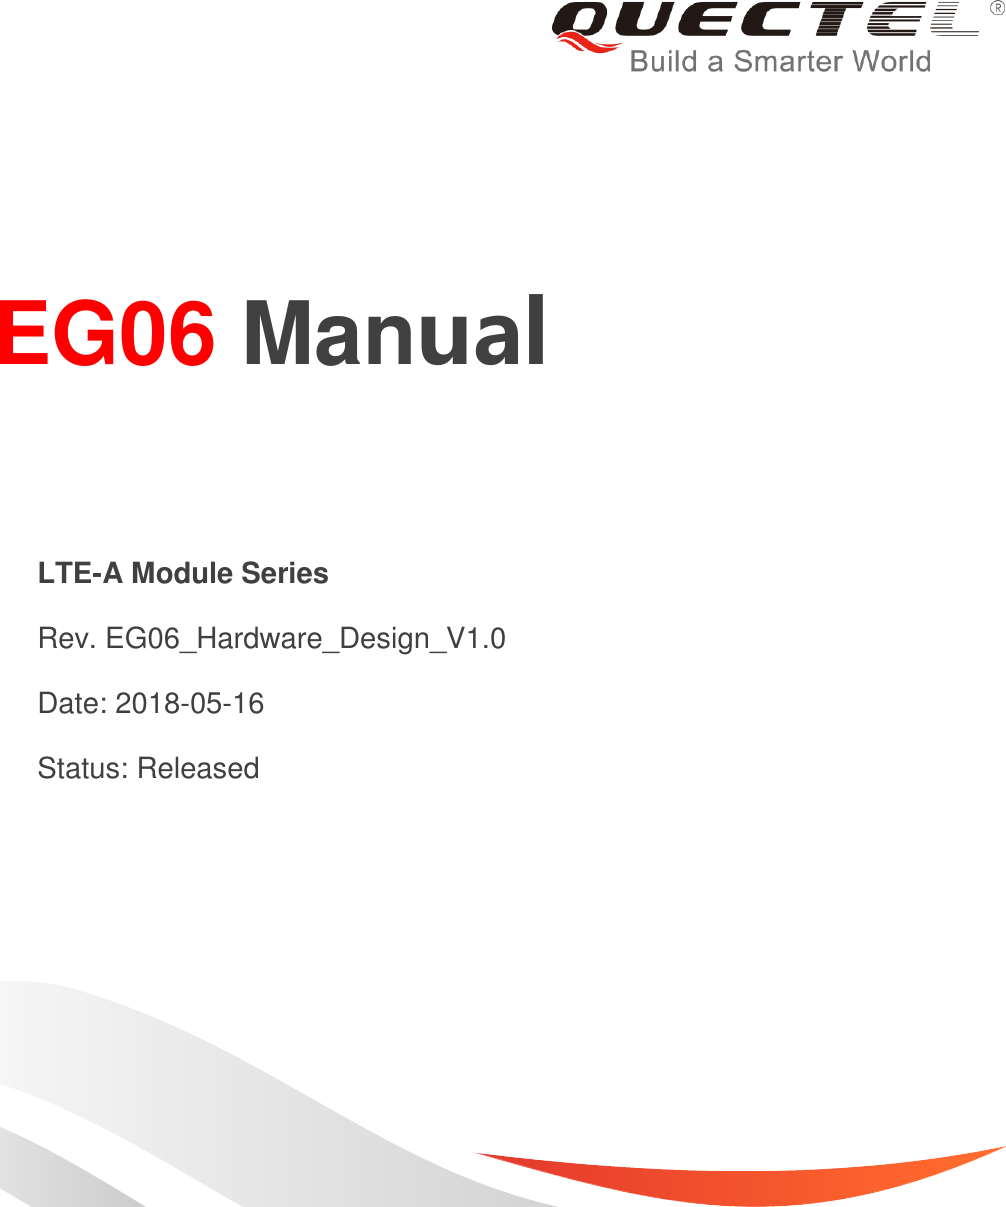     EG06 Manual  LTE-A Module Series   Rev. EG06_Hardware_Design_V1.0   Date: 2018-05-16   Status: Released 